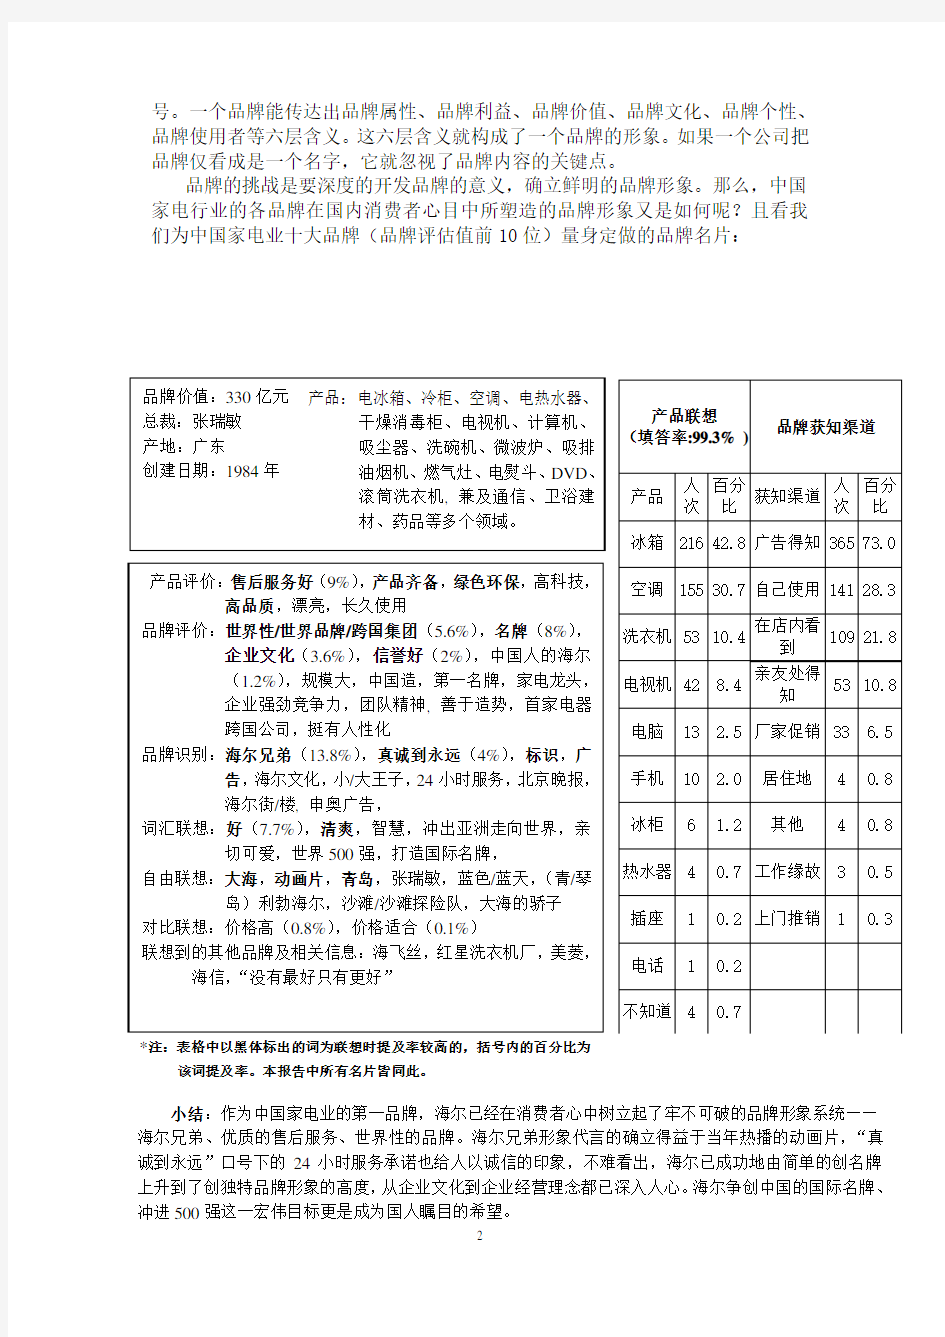 家电行业十大品牌形象调查报告.pdf